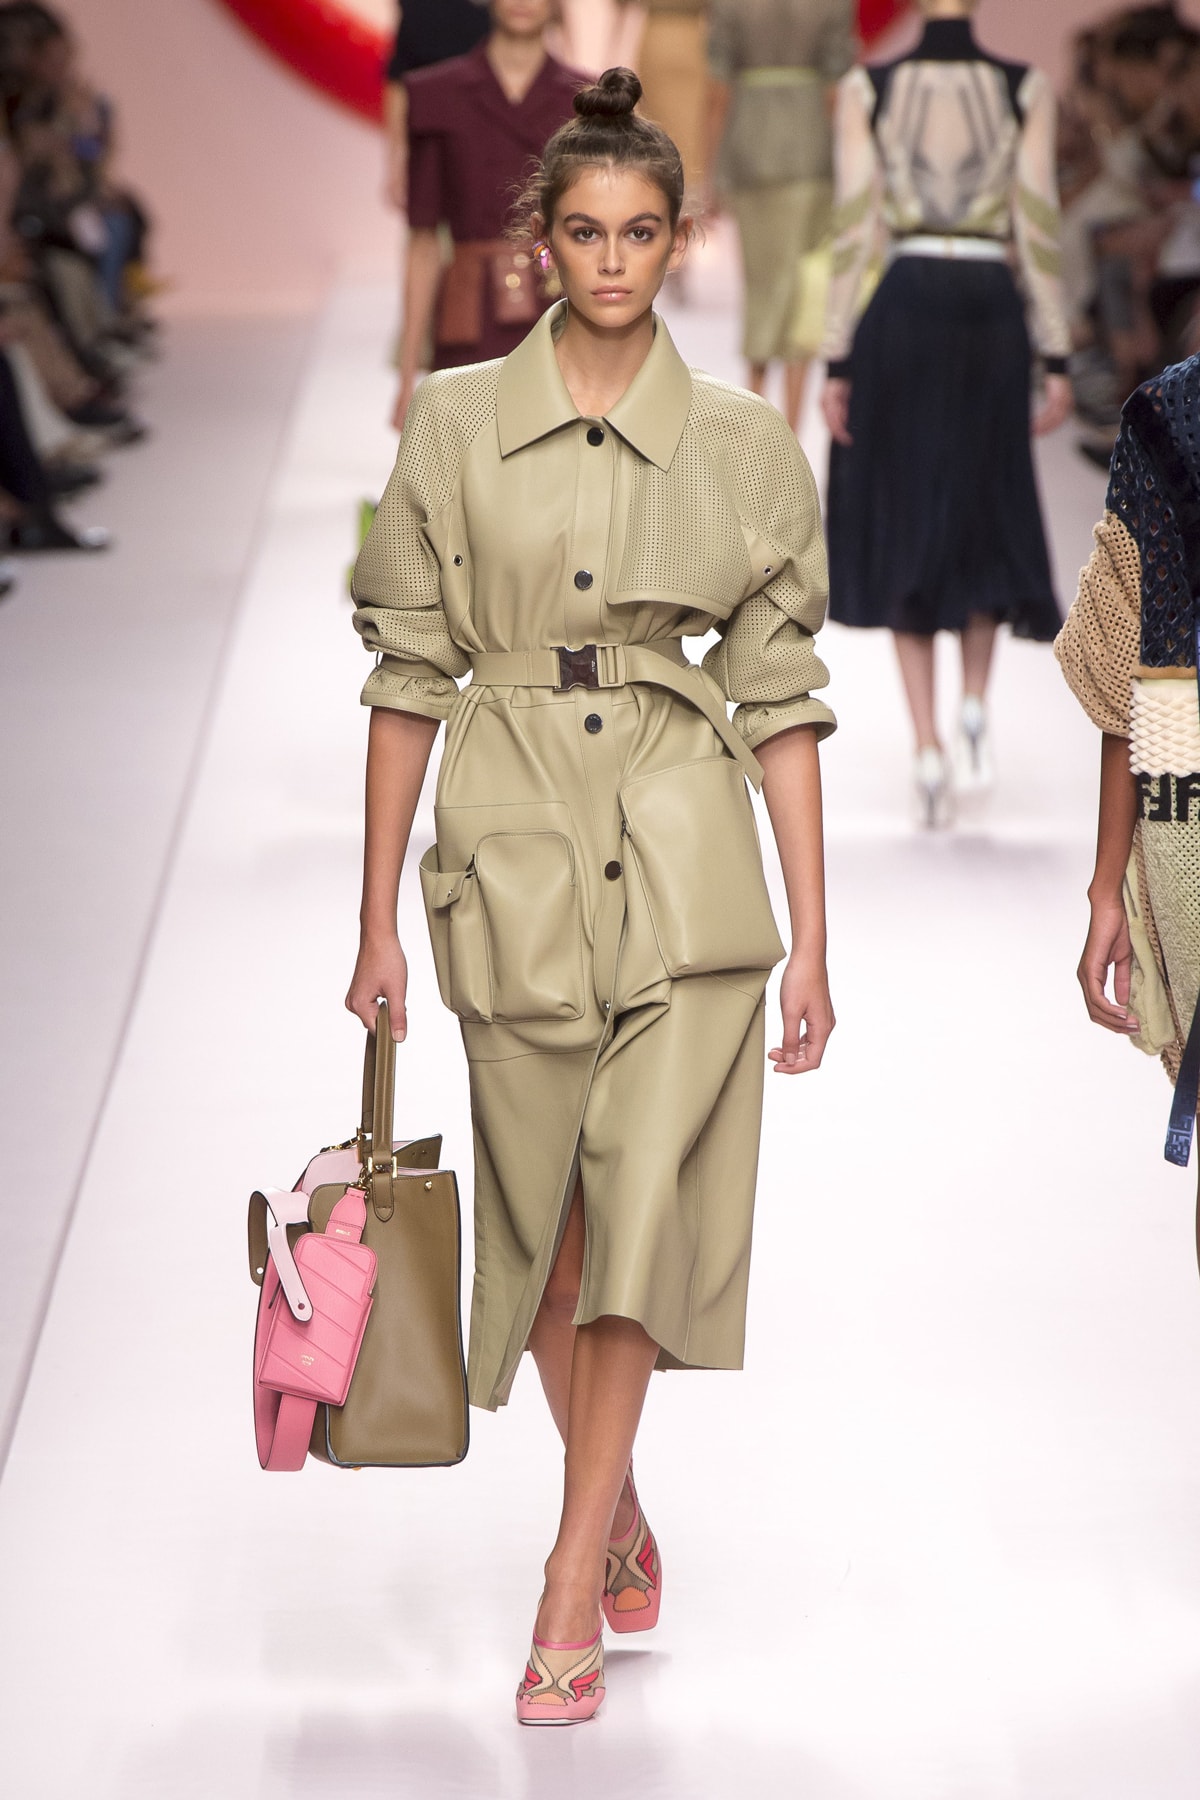 Fendi Karl Lagerfeld Spring Summer 2019 Milan Fashion Week Show Collection Jacket Skirt Khaki